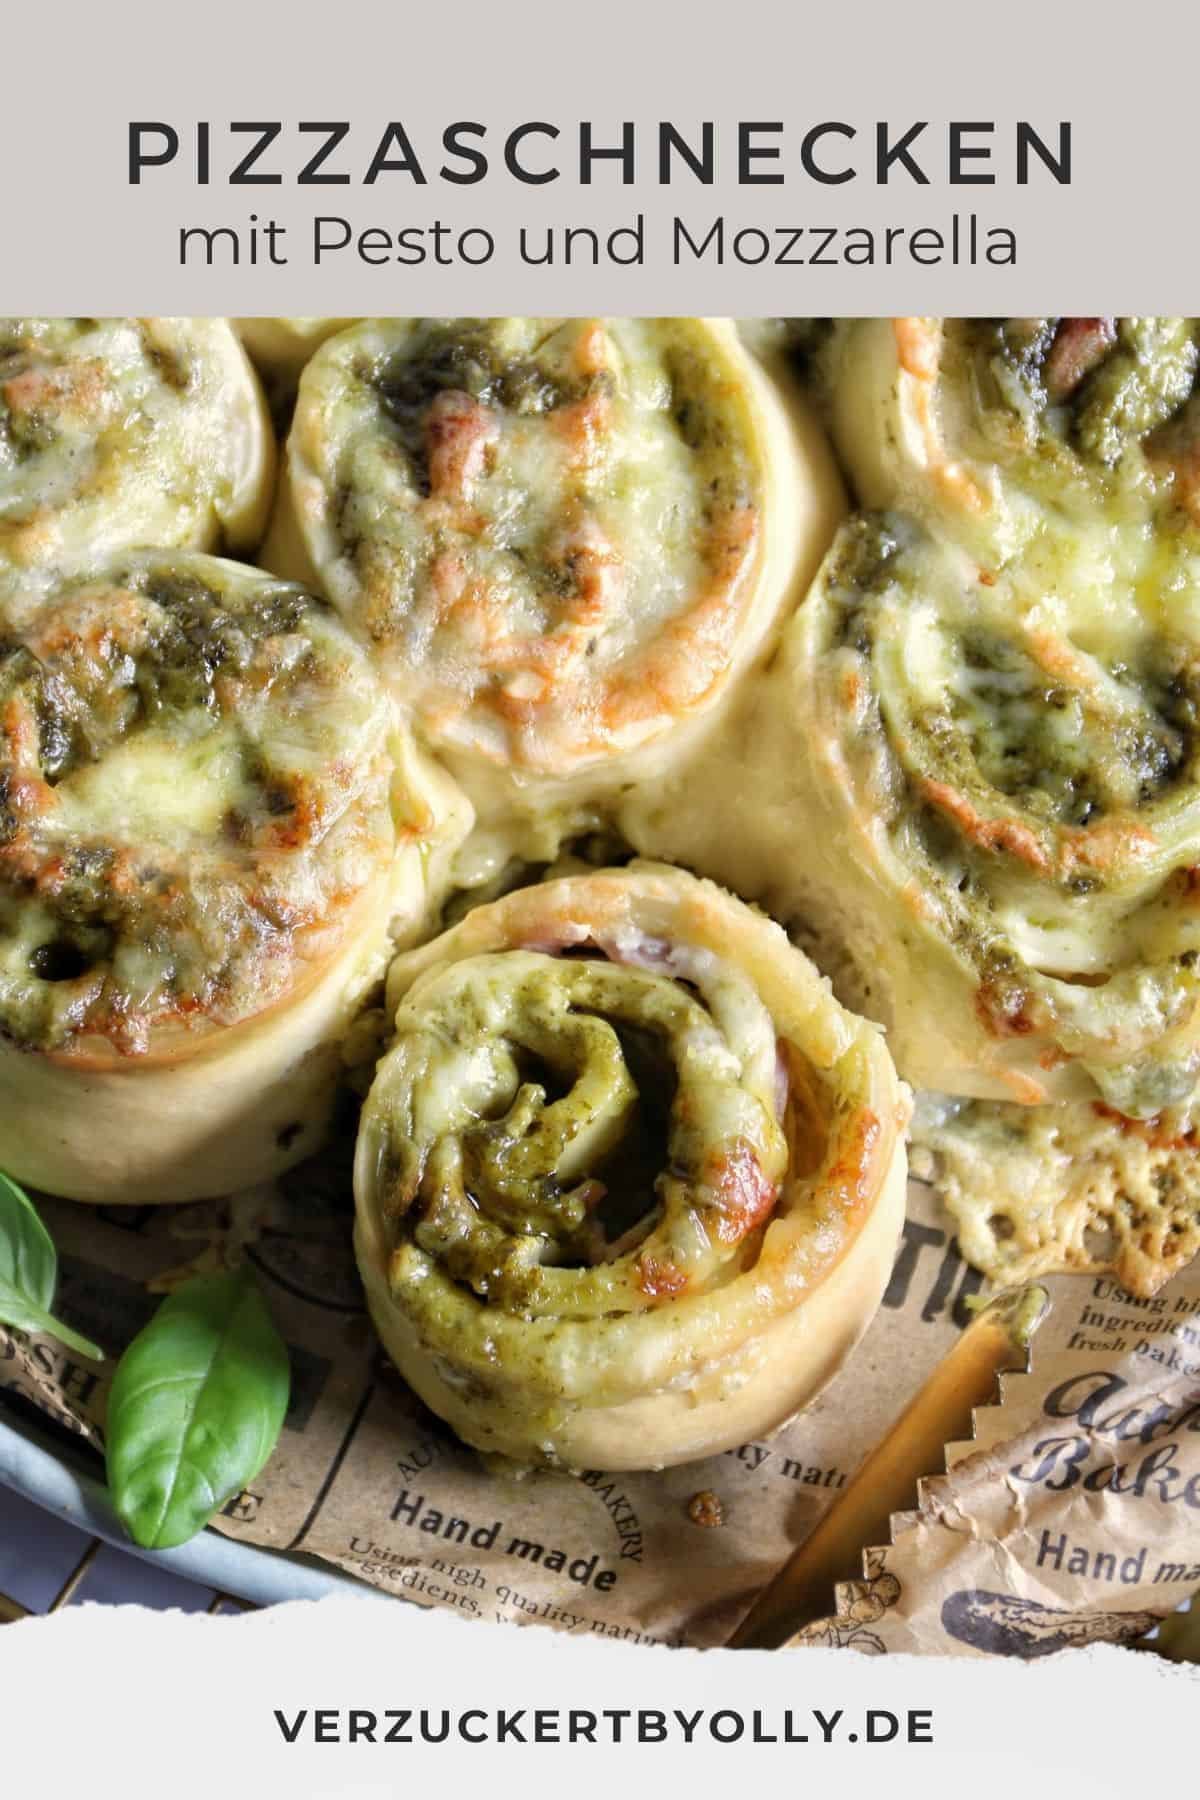 Pin zu Pinterest: Pizzaschnecken mit Pesto und Mozzarella aus Ferrtigteig